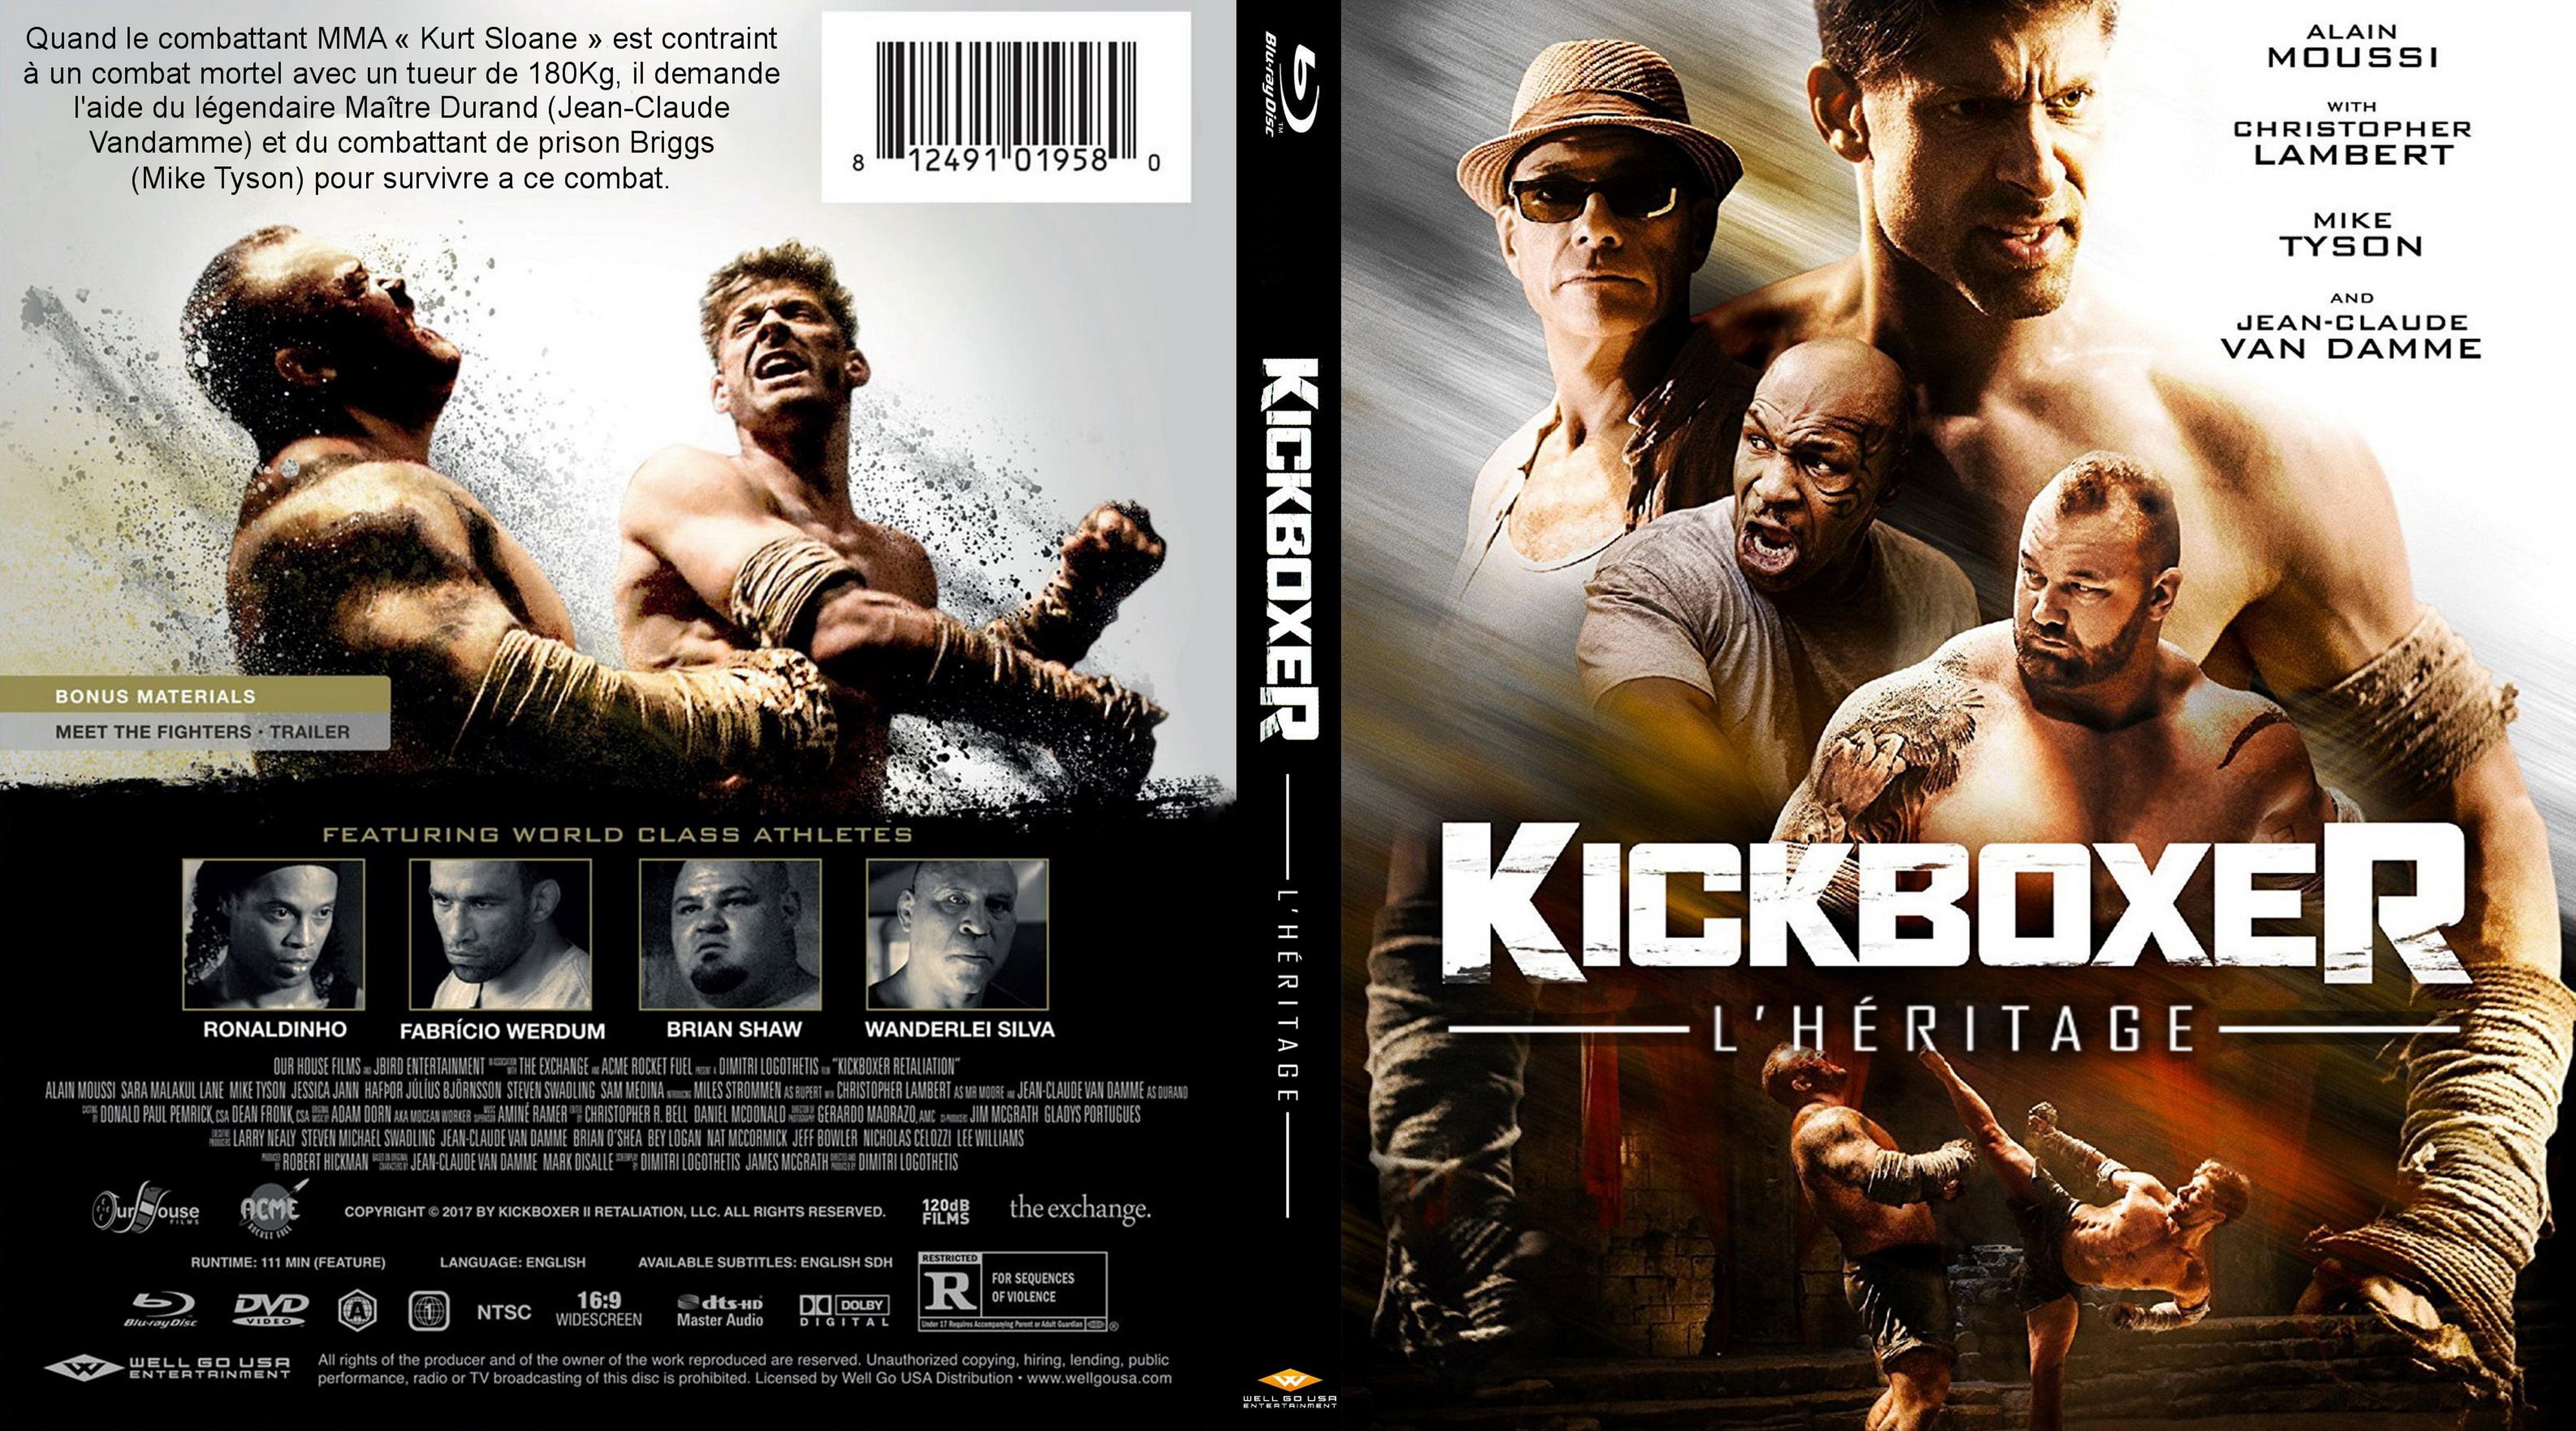 Jaquette DVD Kickboxer l